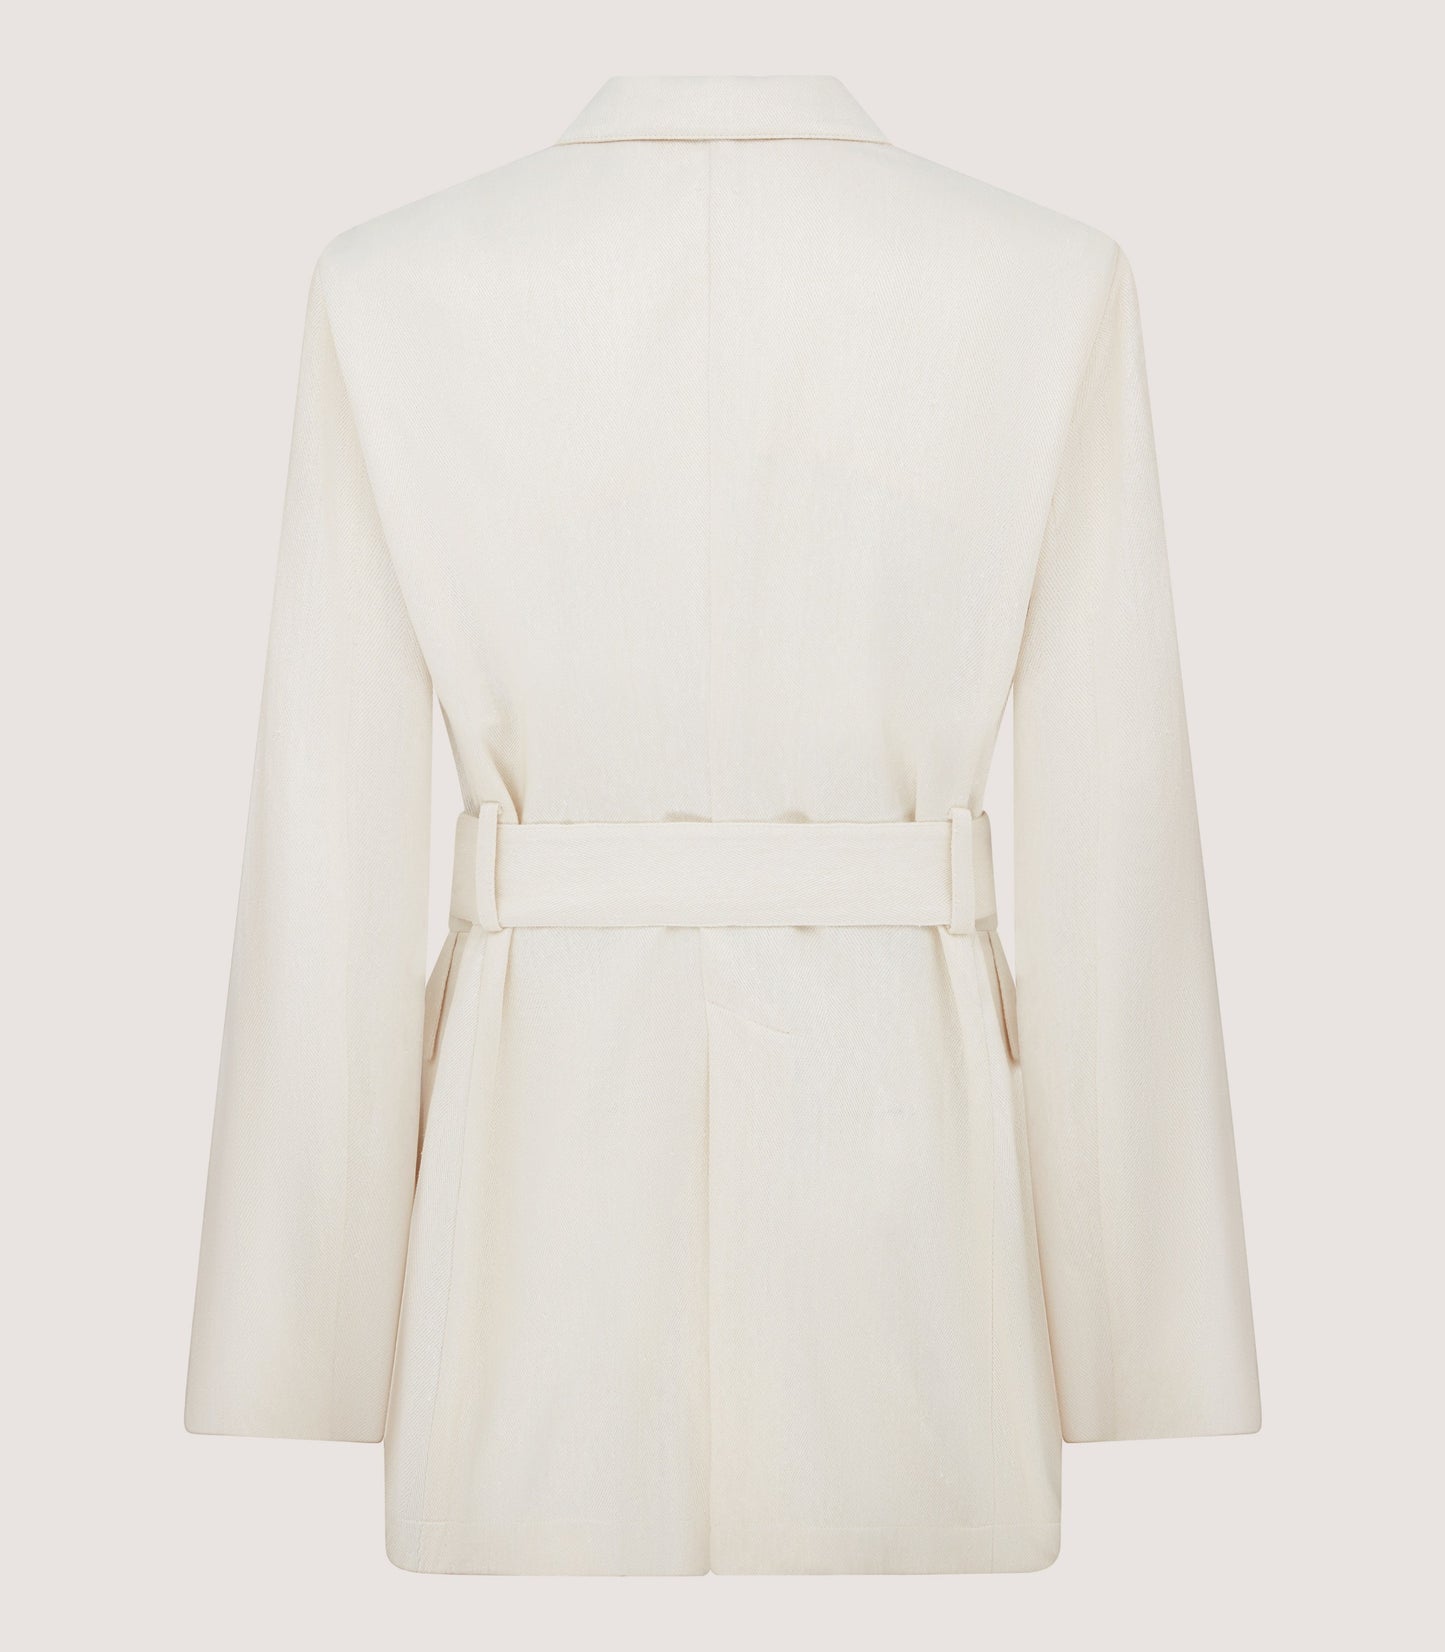 Women's Wilton Jacket in Ivory